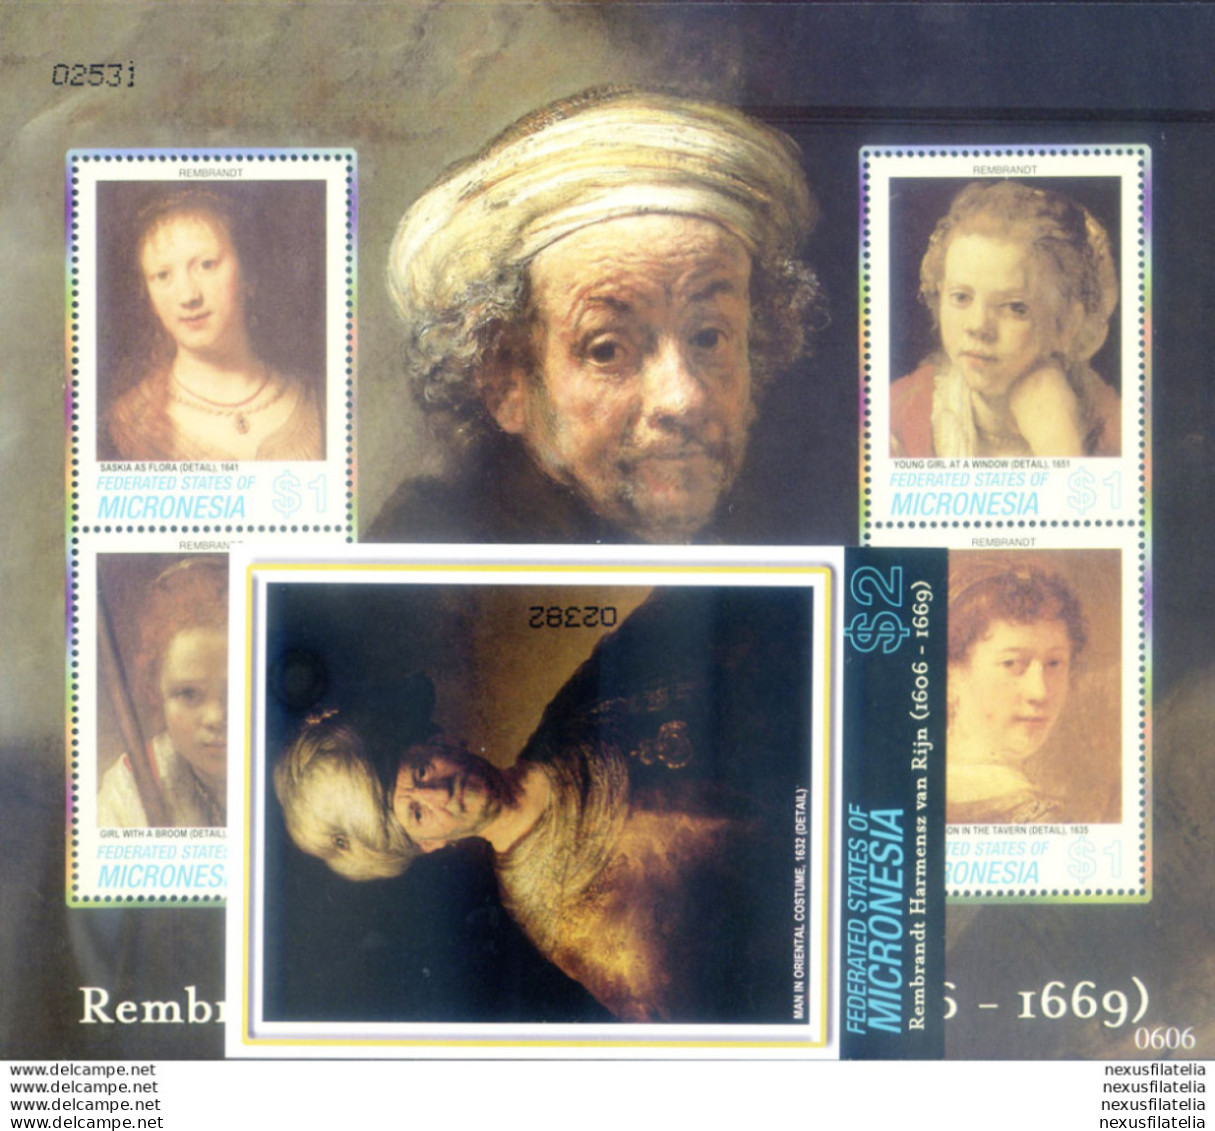 Rembrandt 2006. - Mikronesien